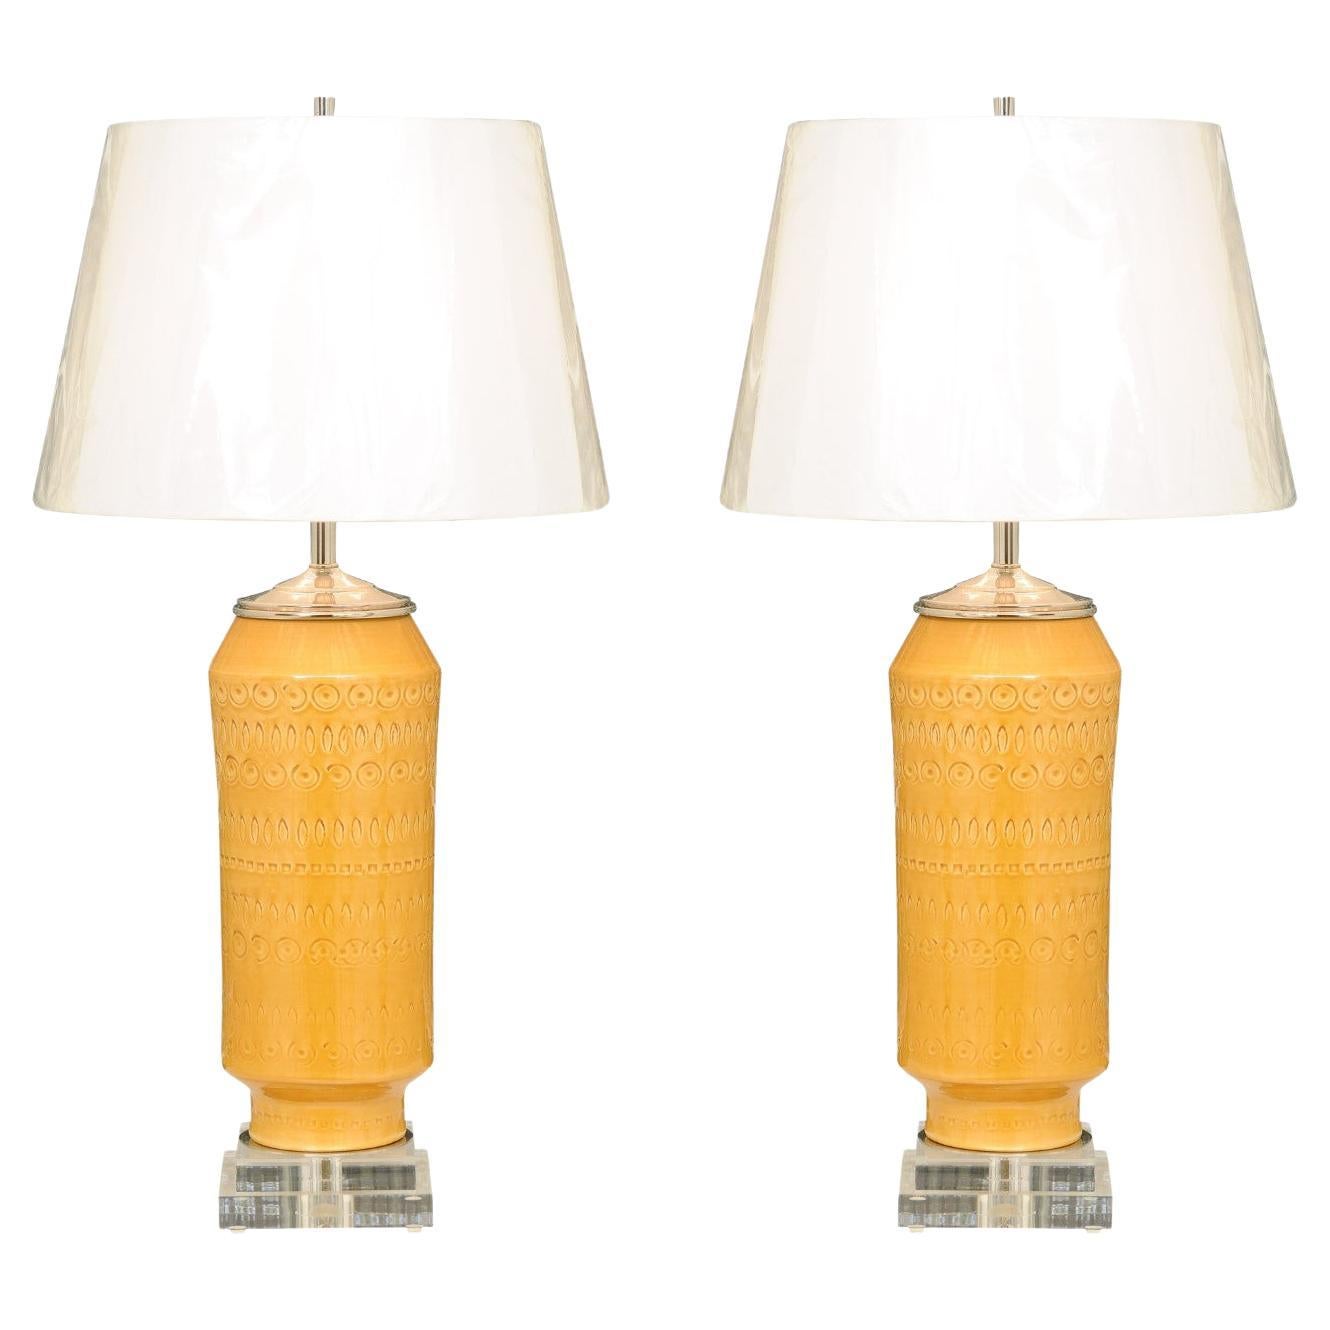 Magnifique paire de céramiques italiennes jaune ocre, vers 1970, en tant que nouvelles lampes sur mesure